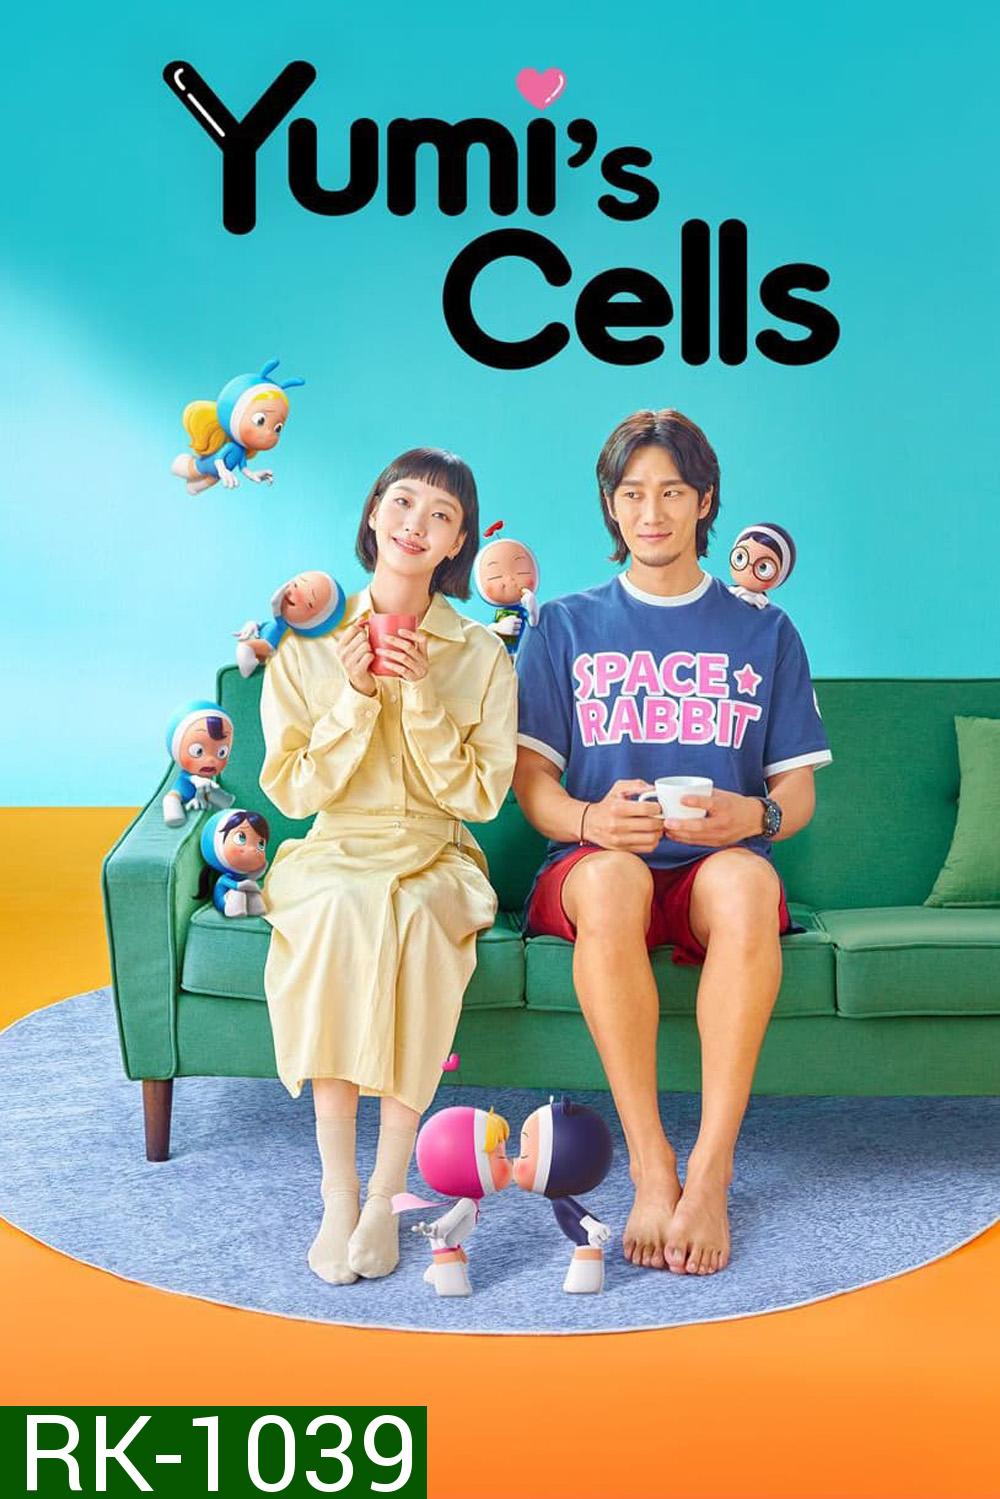 ยูมิกับเซลล์สมองสุดอลเวง 1: Yumis Cells (2021) Complete 14 Episodes